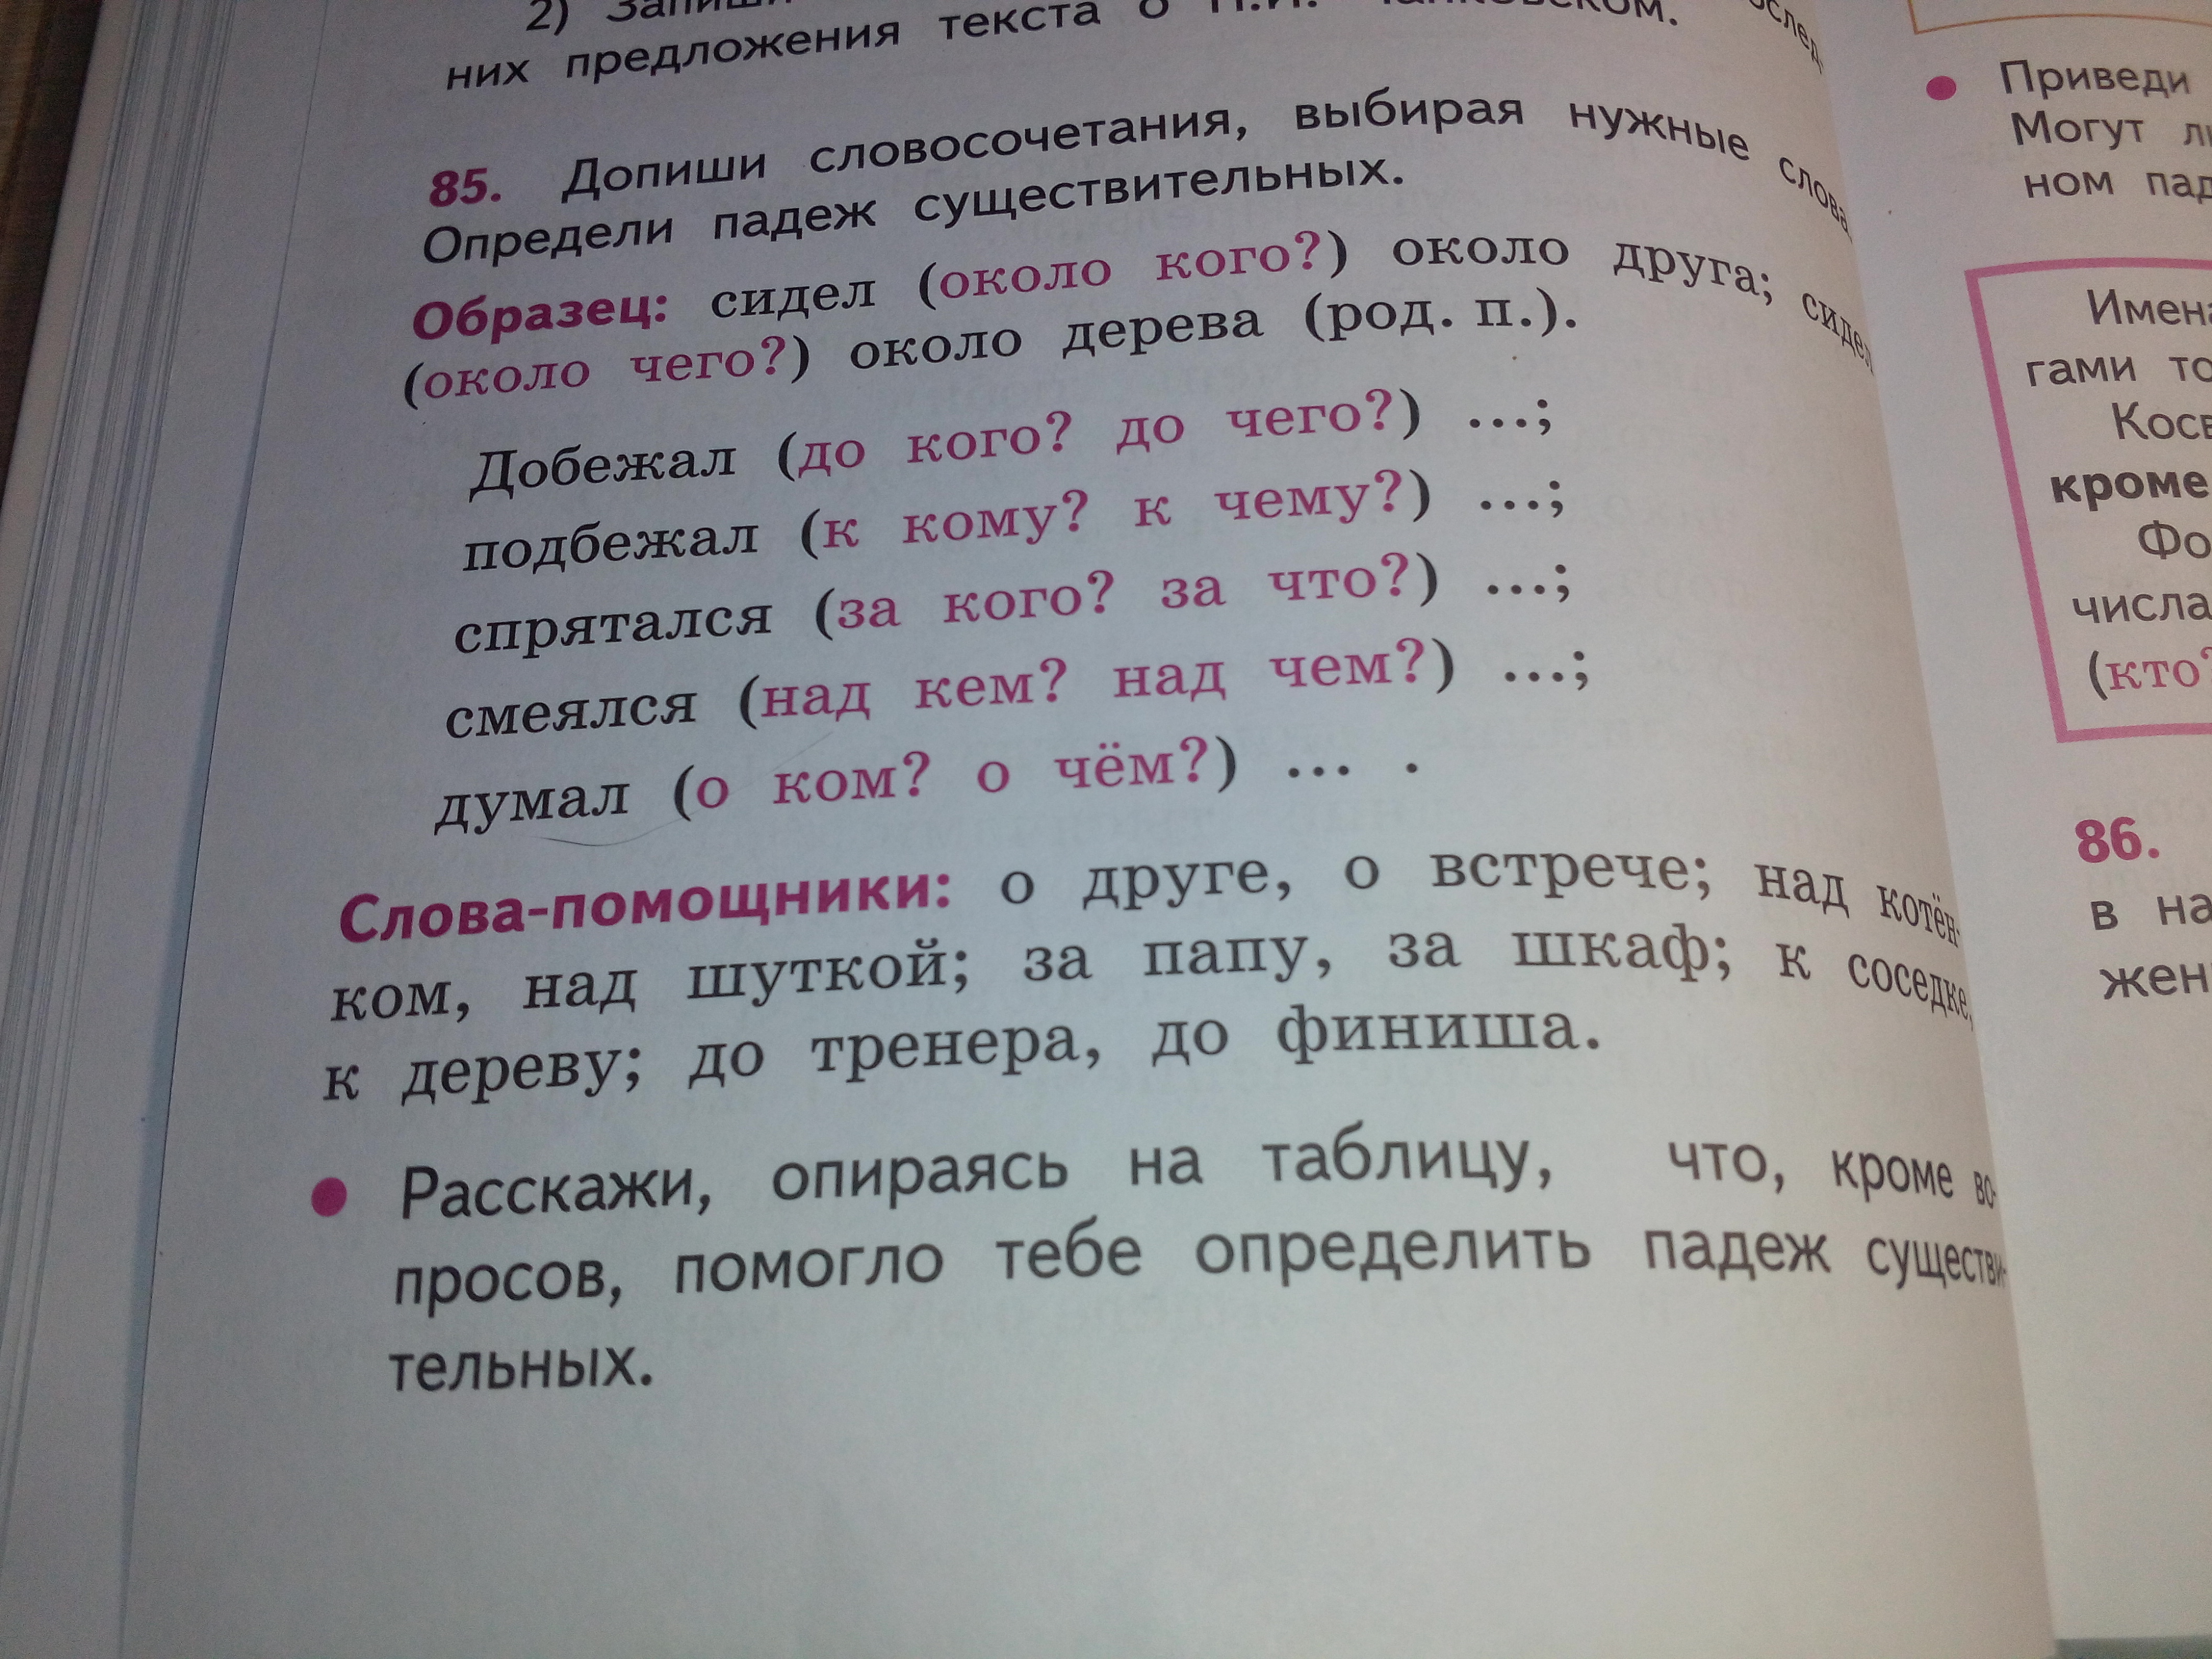 Русский язык стр 85 упр 149. Упр 85,распро траните предложения.